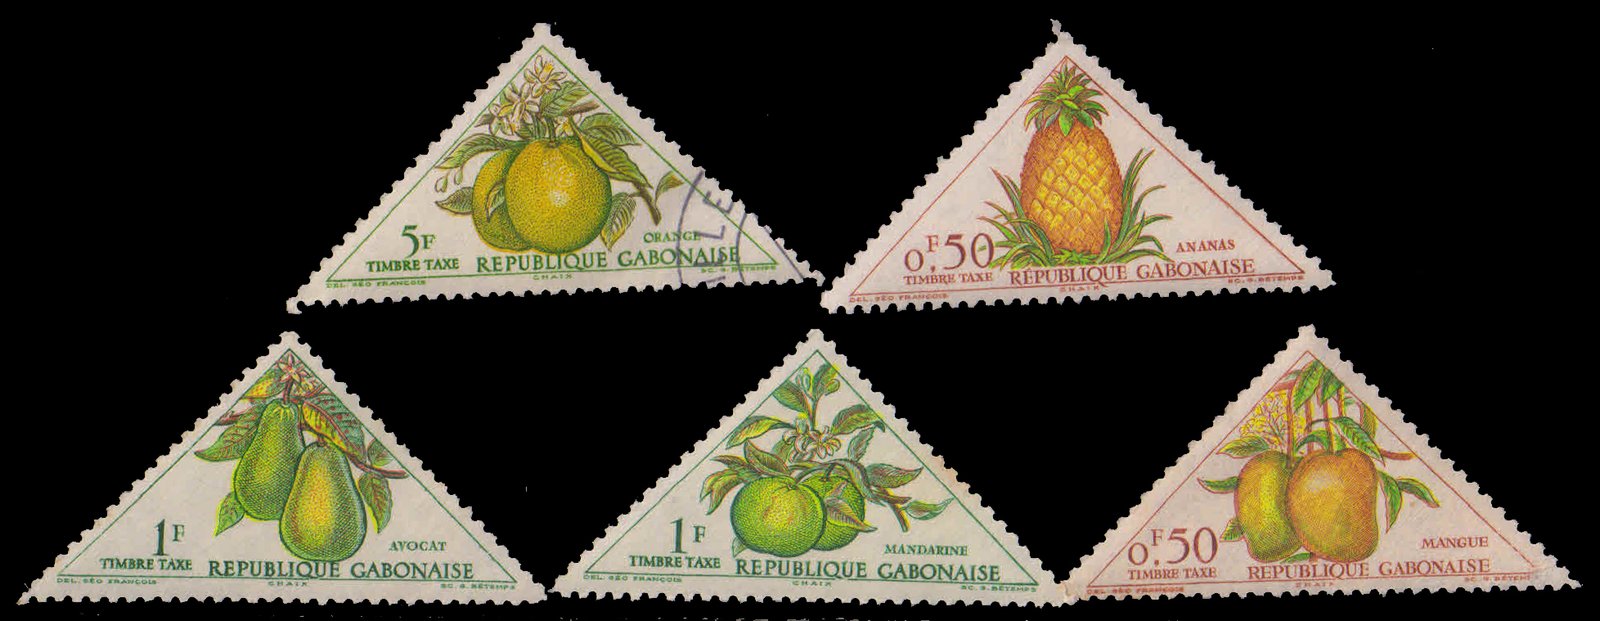 GABON Fruits 5 Different Triangular Stamps